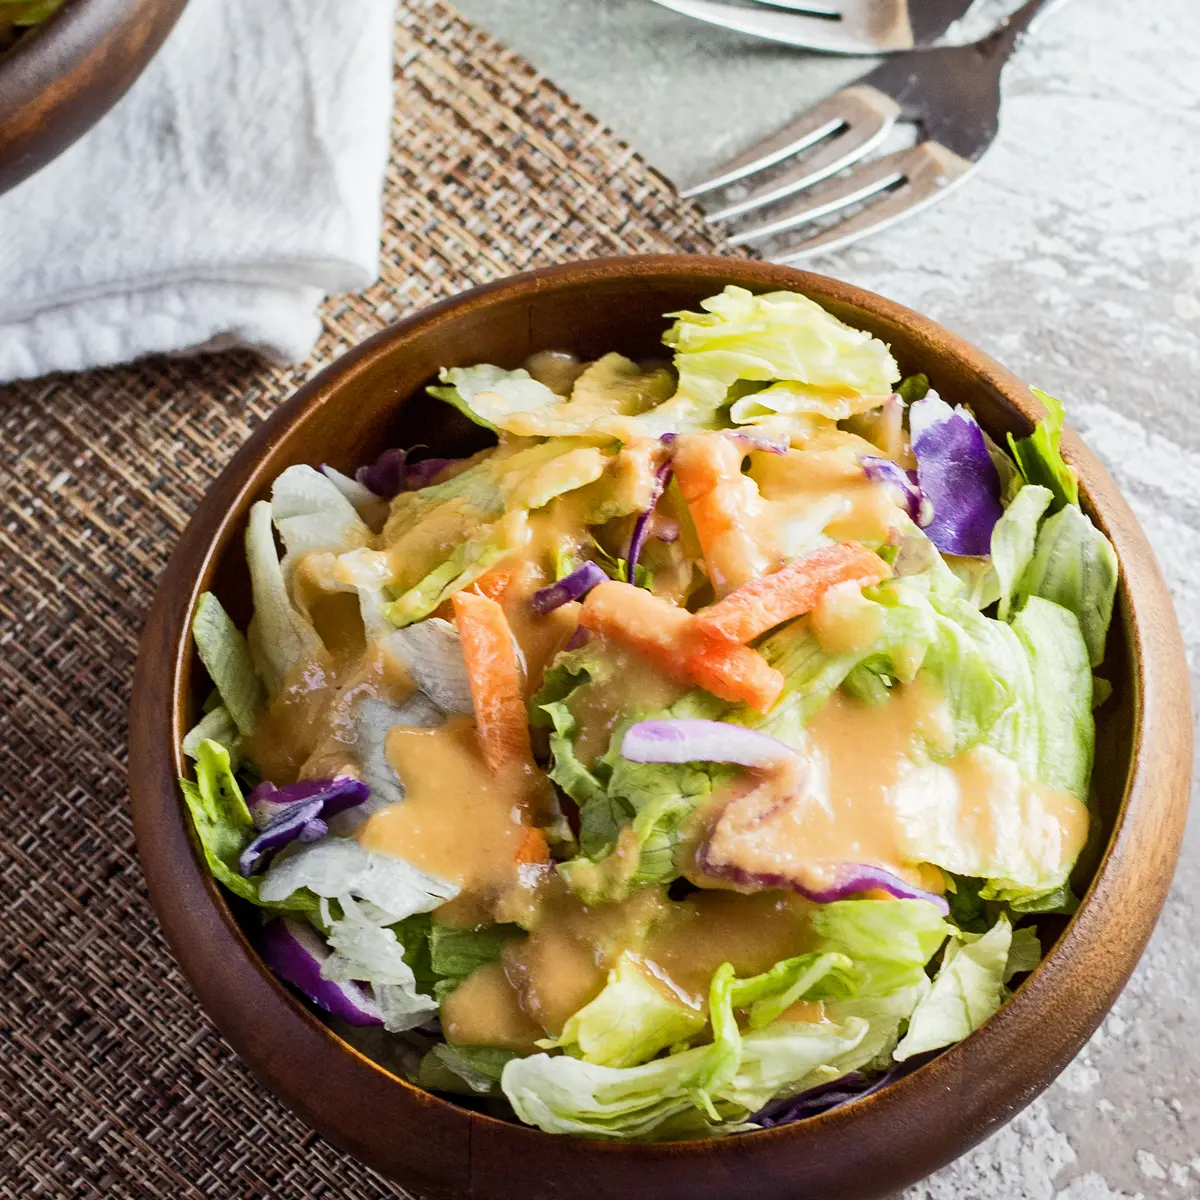 Grande immagine quadrata del condimento per insalata di zenzero benihana servita su insalata in una ciotola di bambù scuro con sfondo strutturato chiaro.